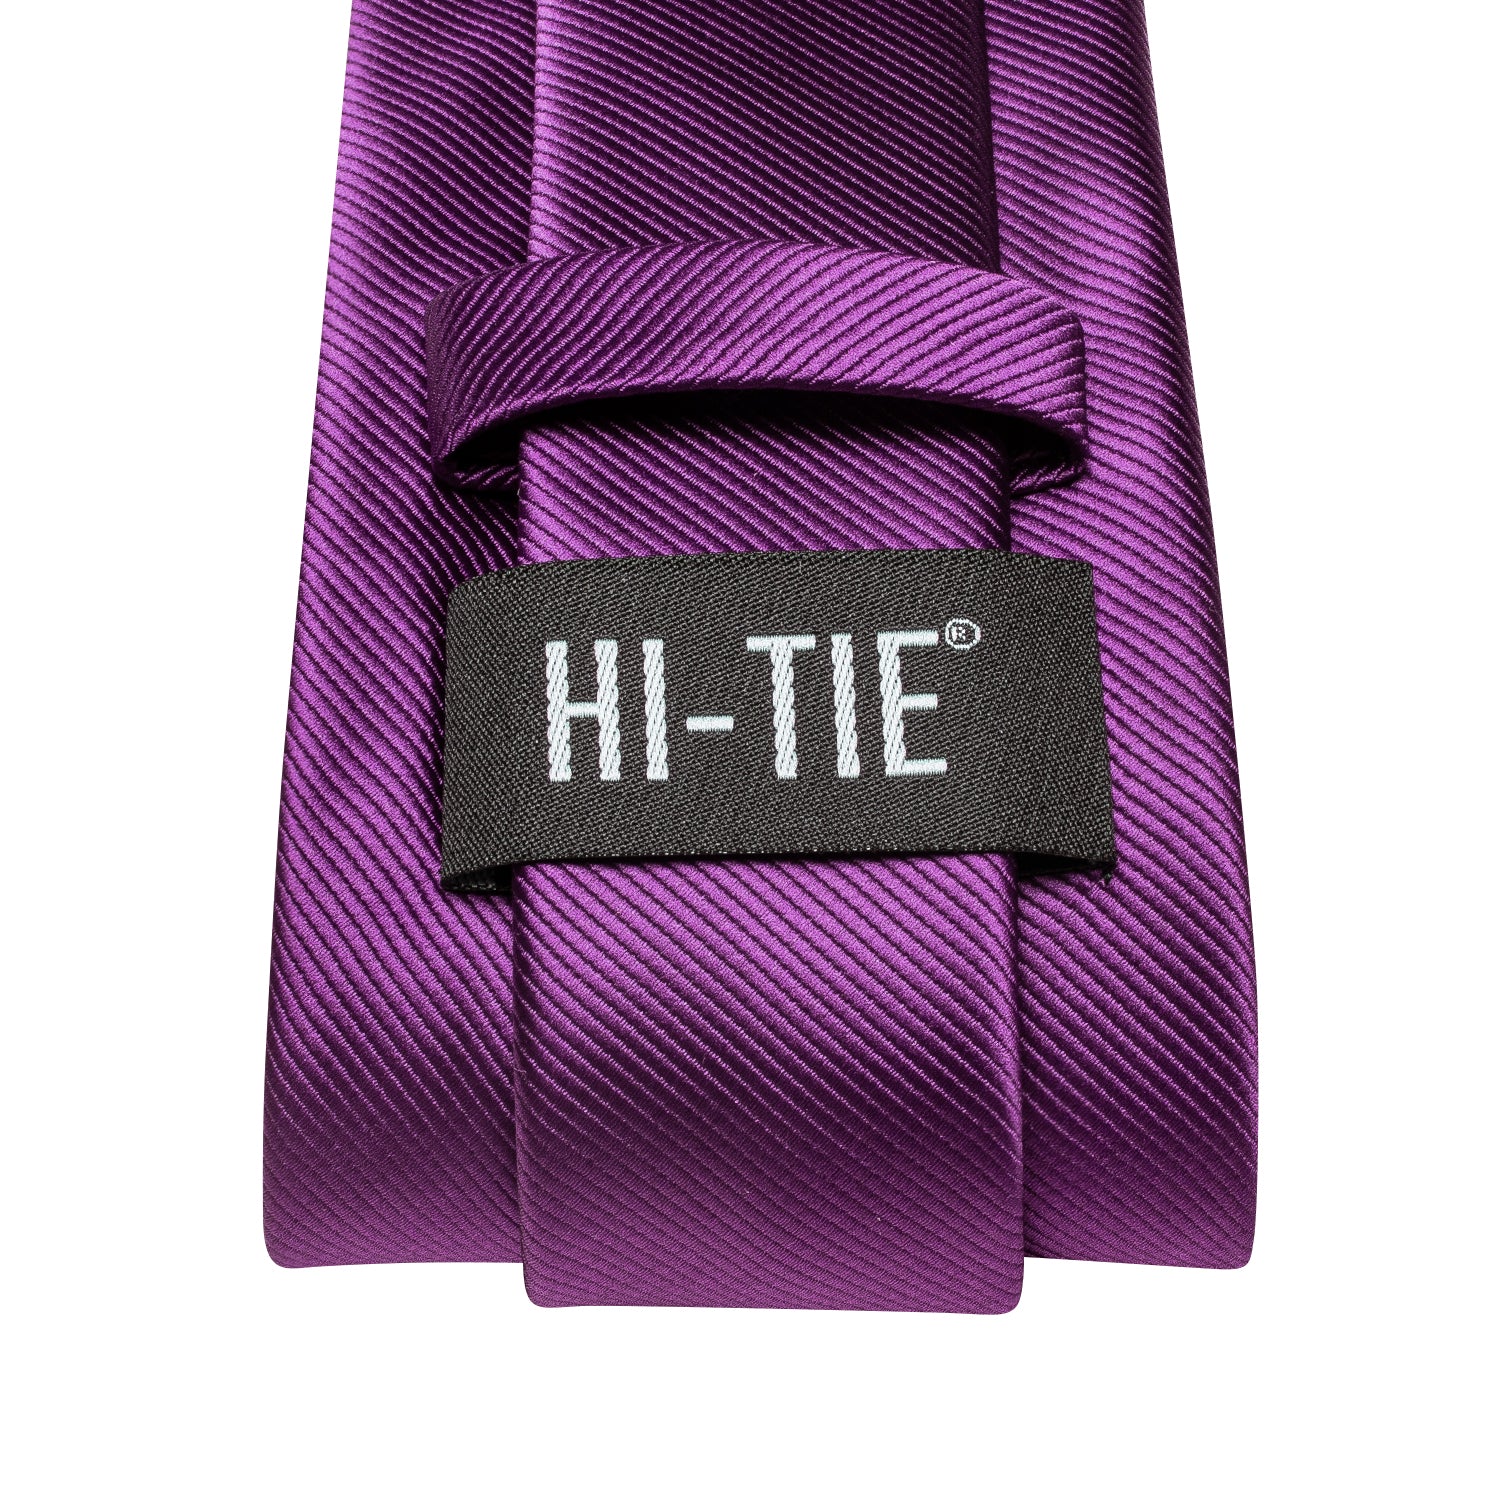 Dark Purple Solid Tie Pocket Square Cufflinks Set